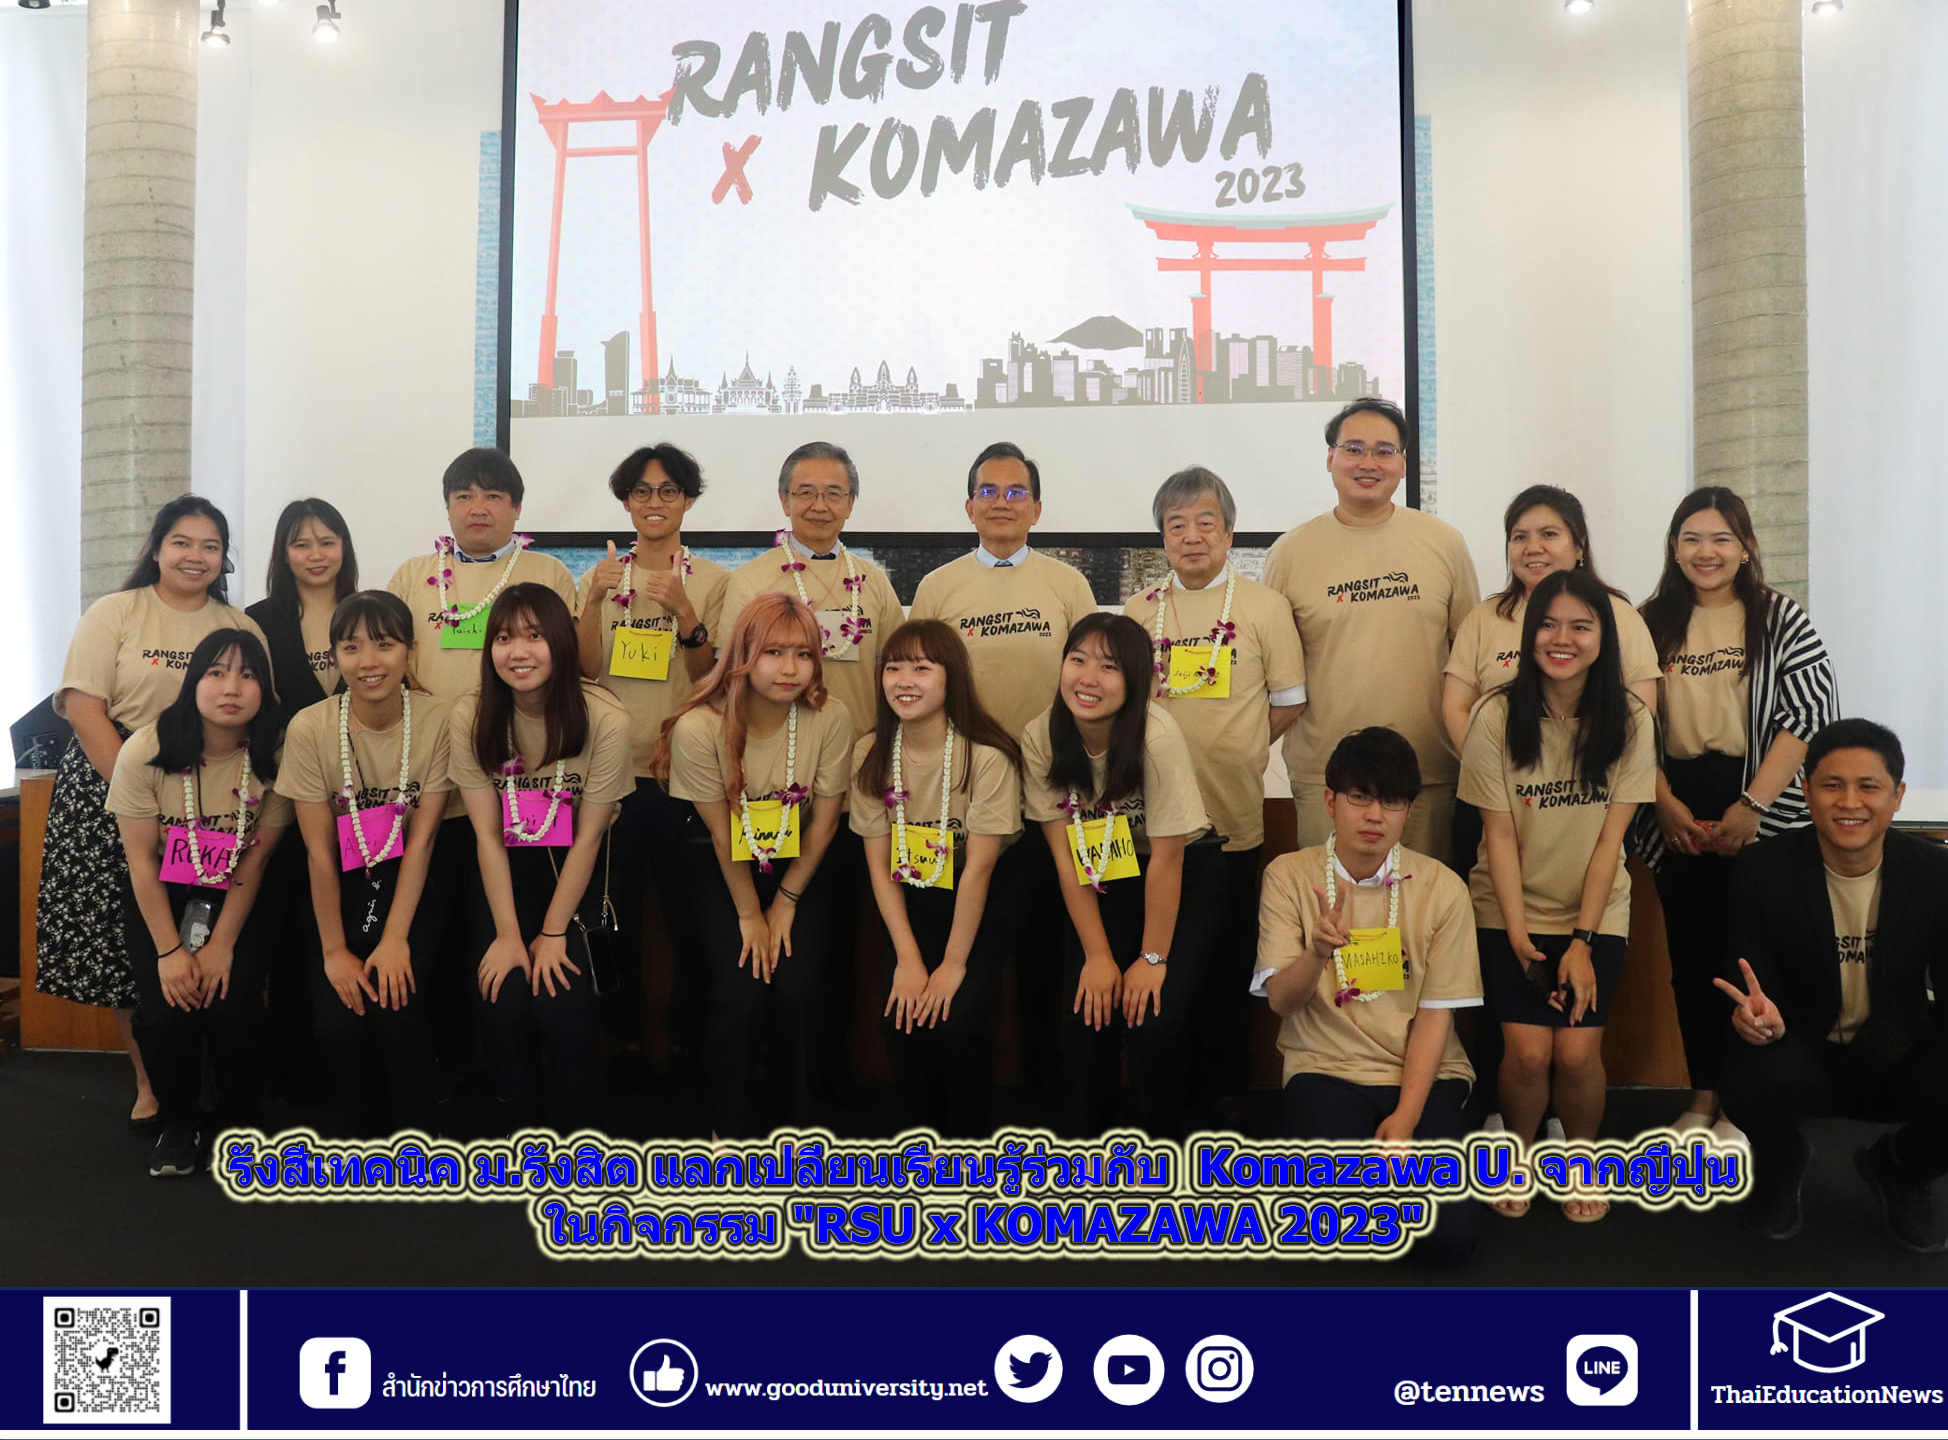 รังสีเทคนิค ม.รังสิต แลกเปลี่ยนเรียนรู้ร่วมกับ  Komazawa U. จากญี่ปุ่น ในกิจกรรม “RSU x KOMAZAWA 2023”